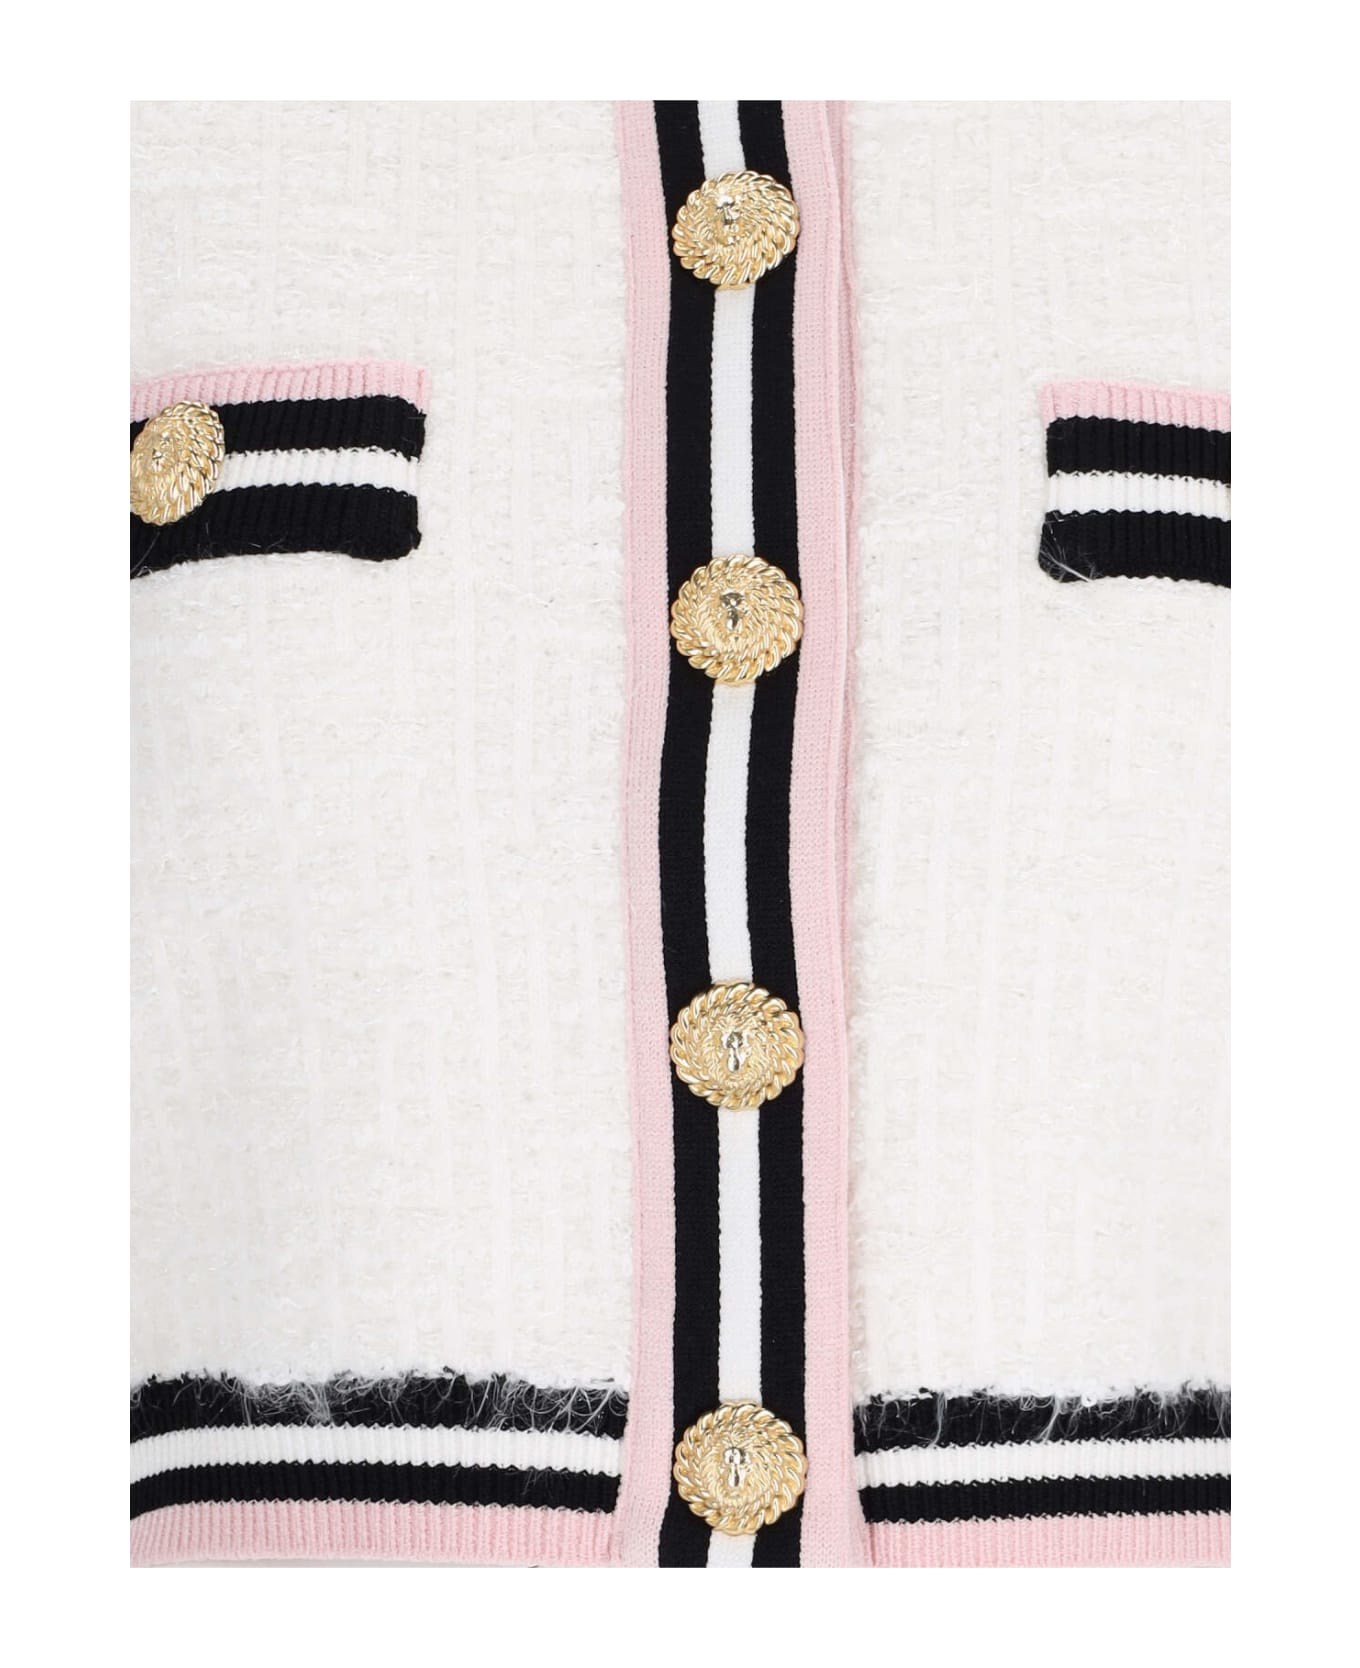 Balmain Knit Cropped Cardigan - White